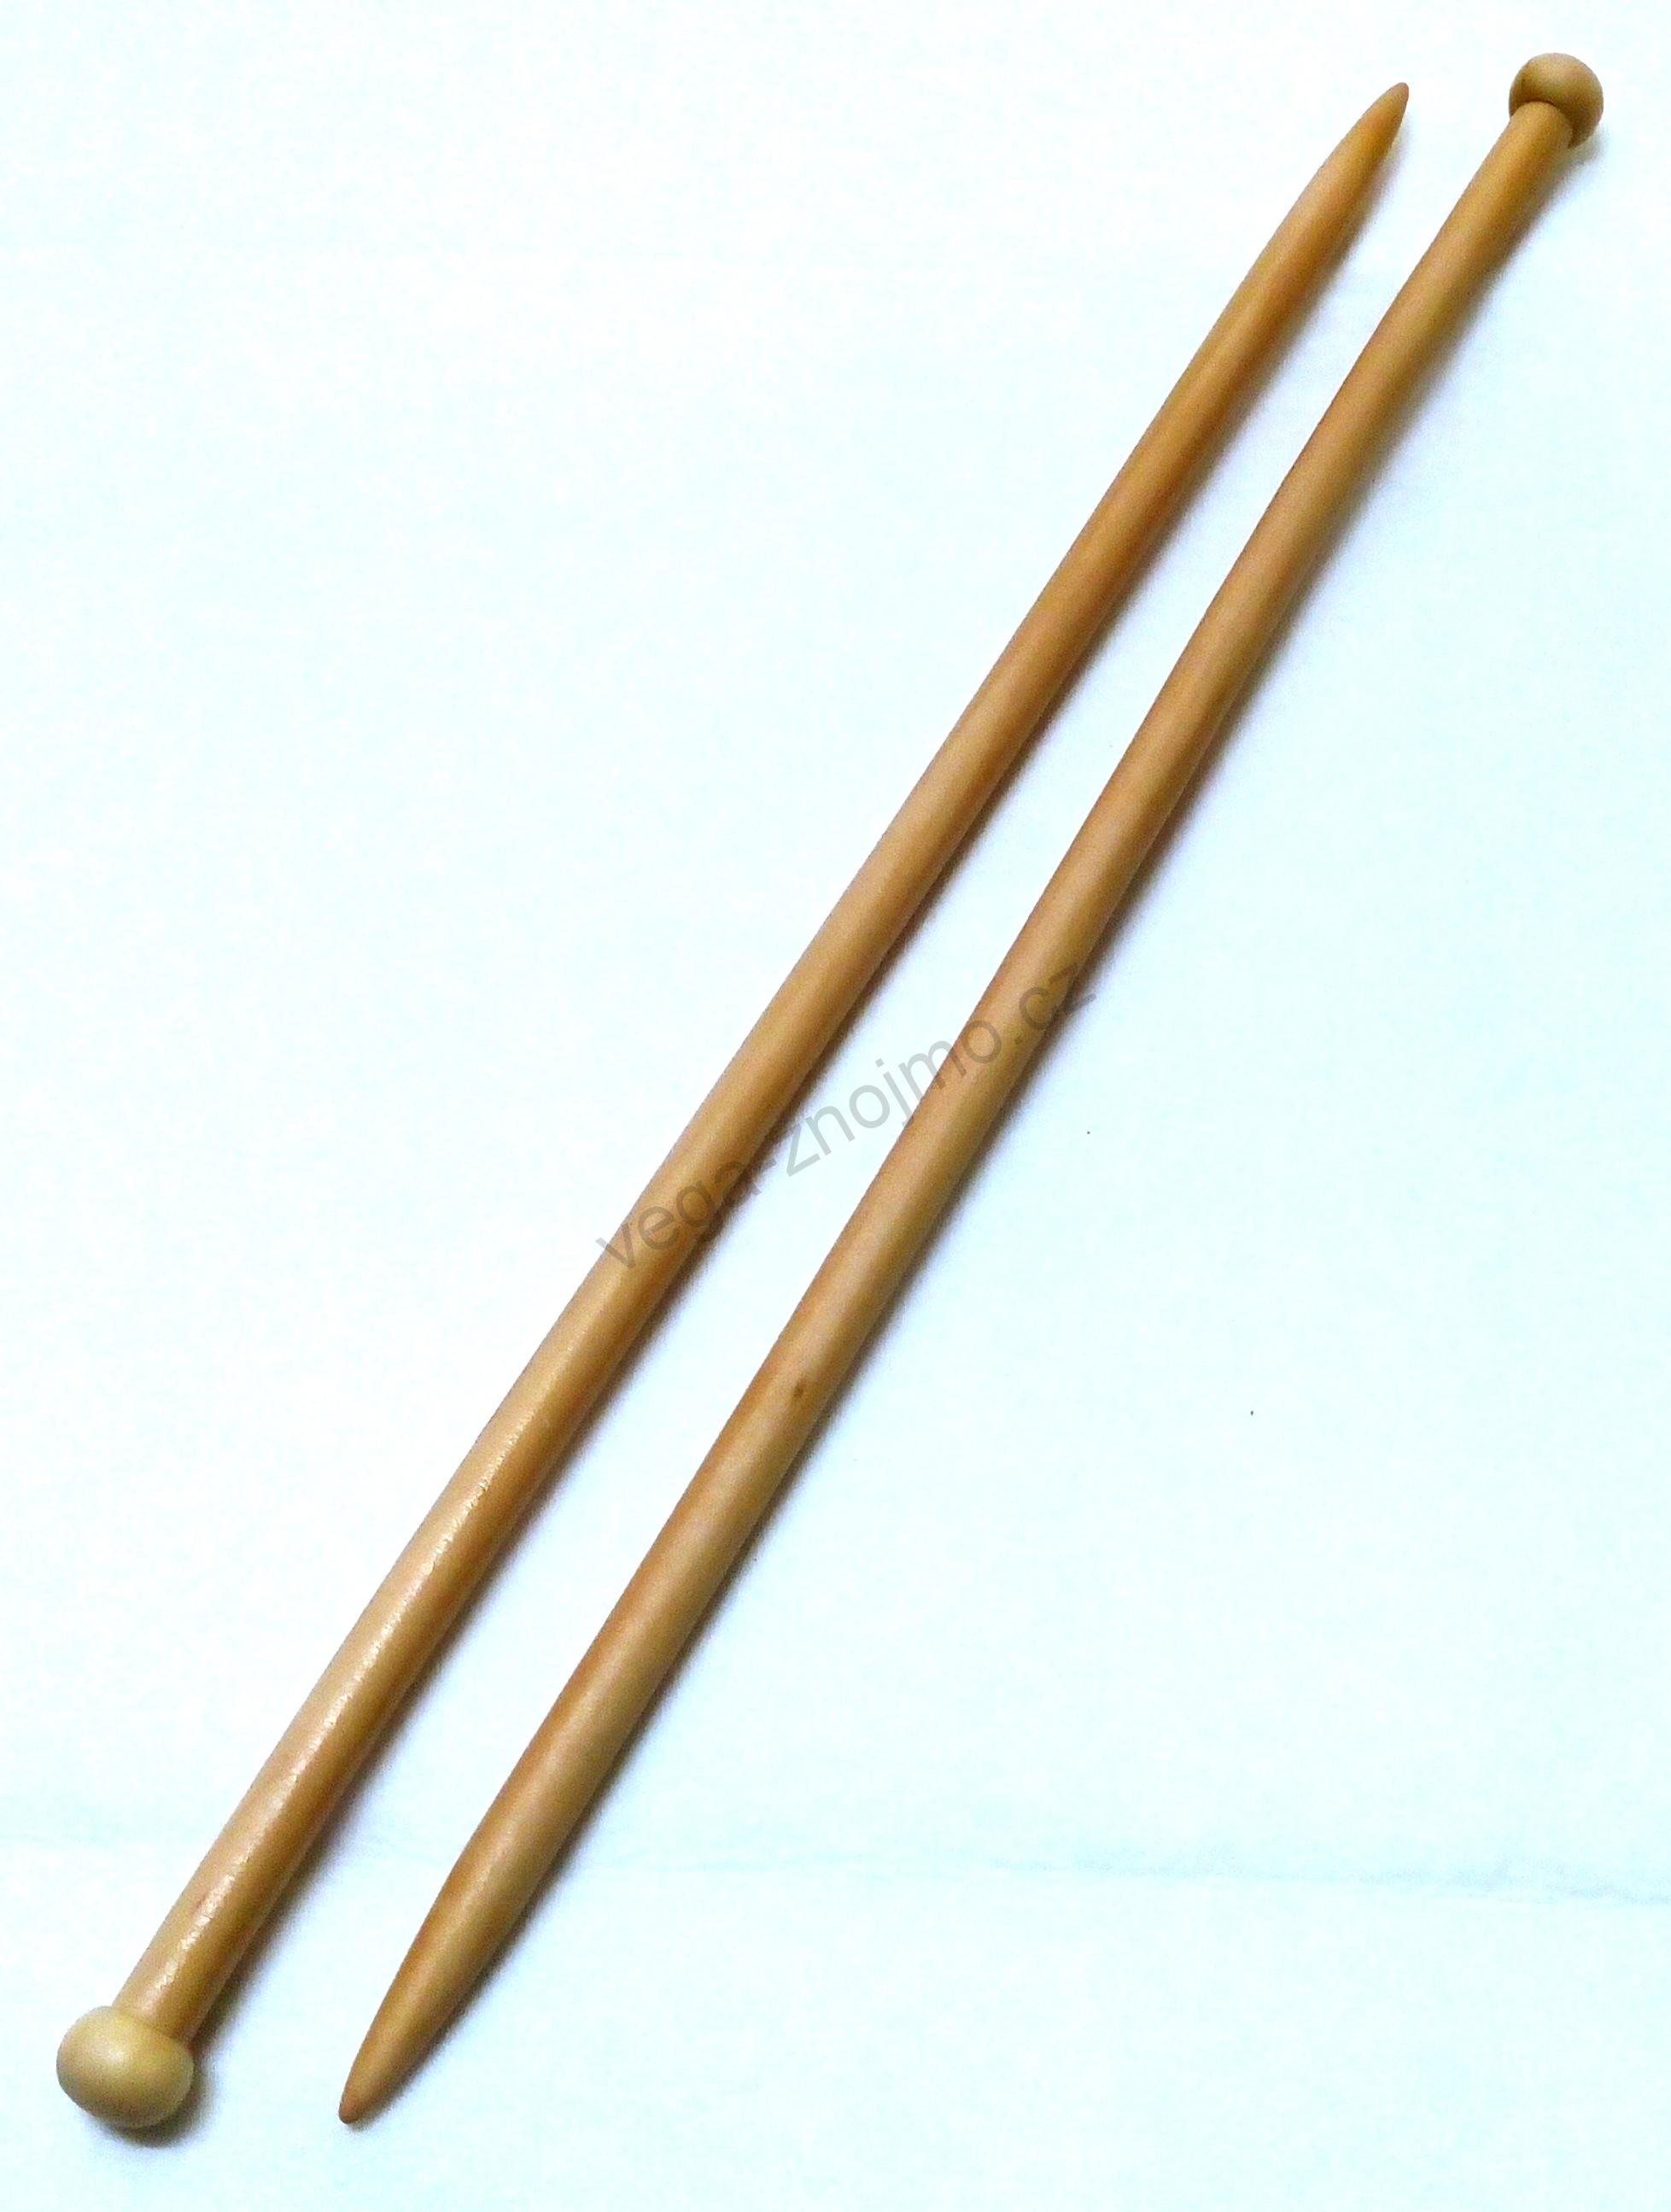 Jehlice dlouhé 35 cm, Dřevo, vel. 14